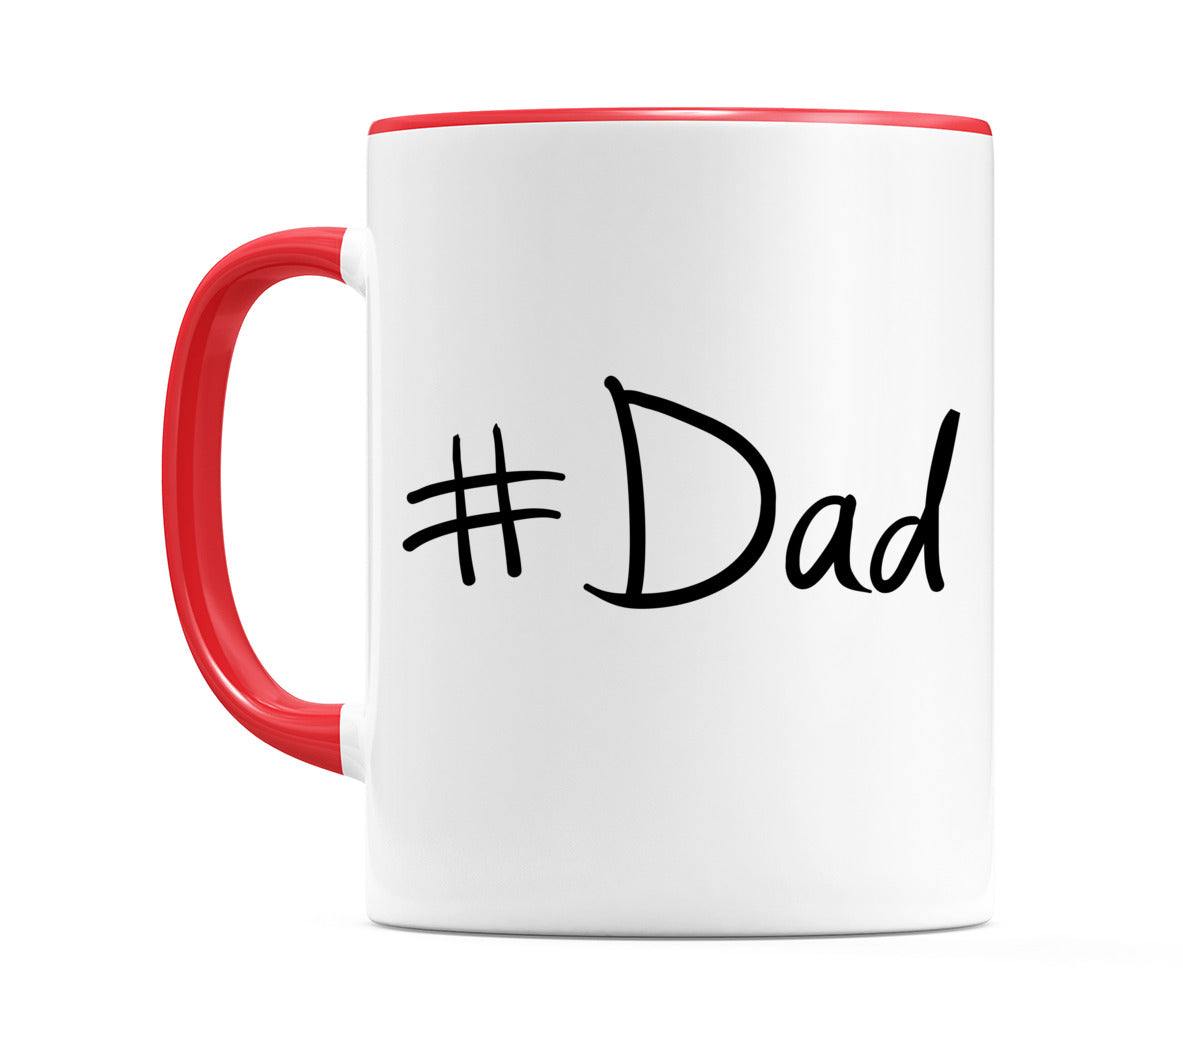 #Dad Mug